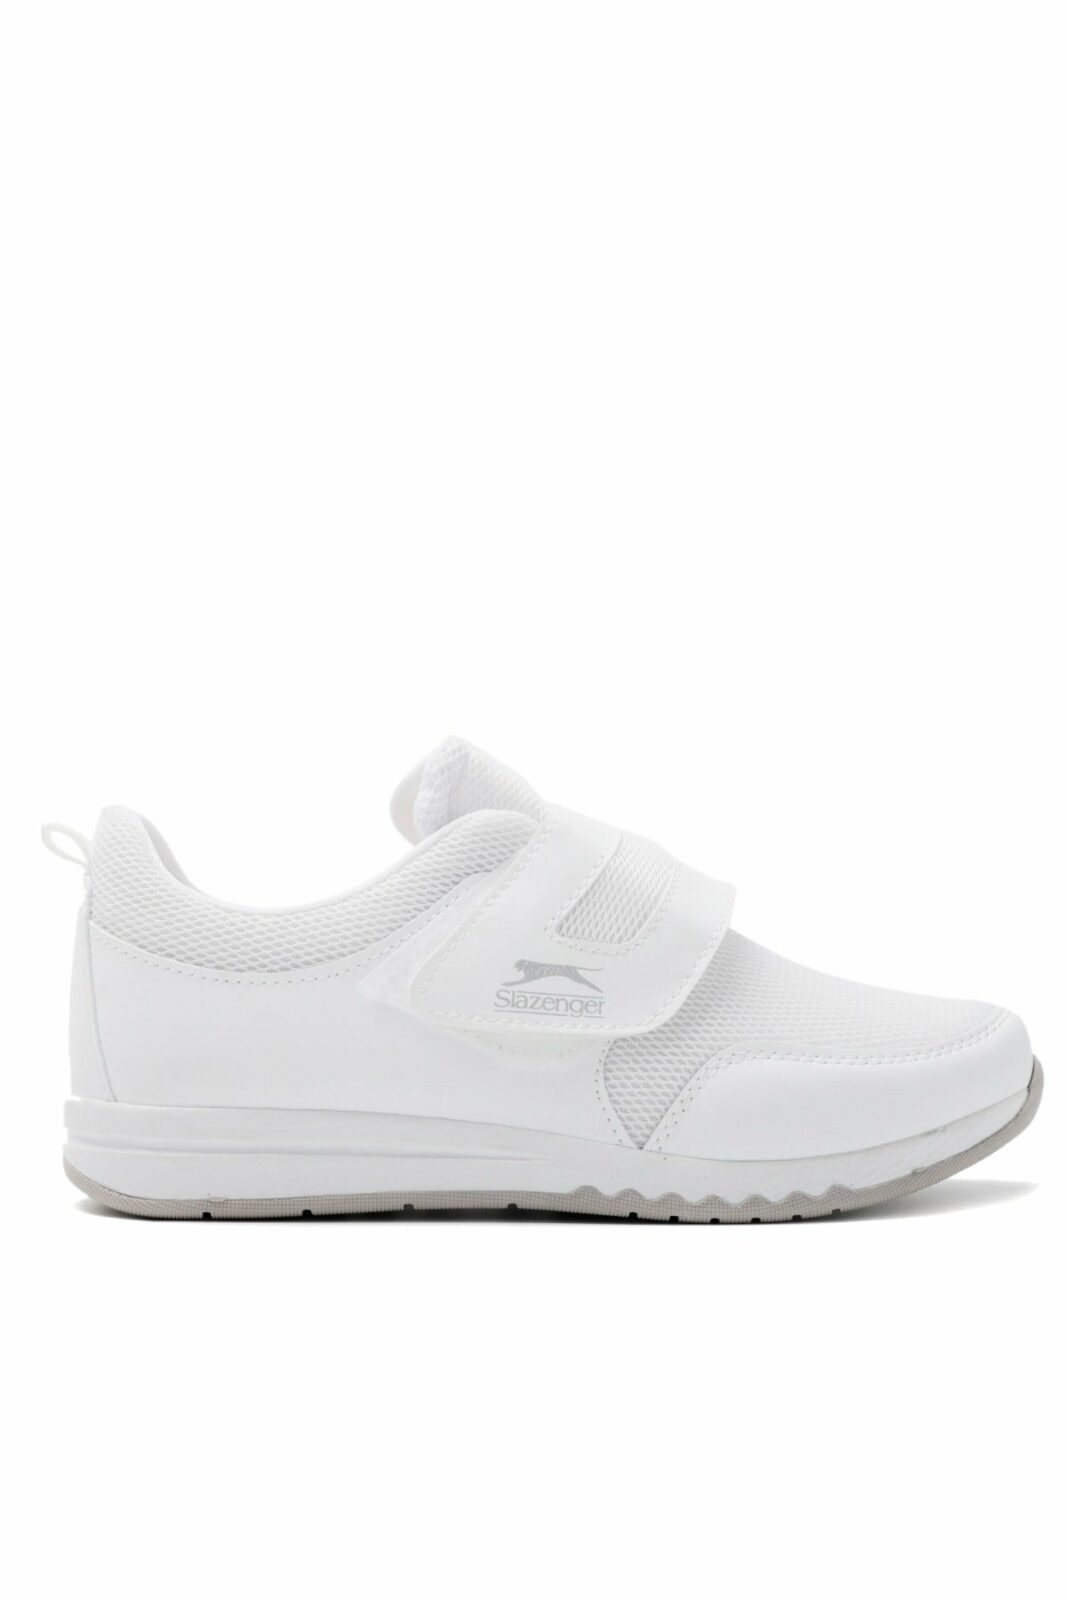 Slazenger Sneakers - White